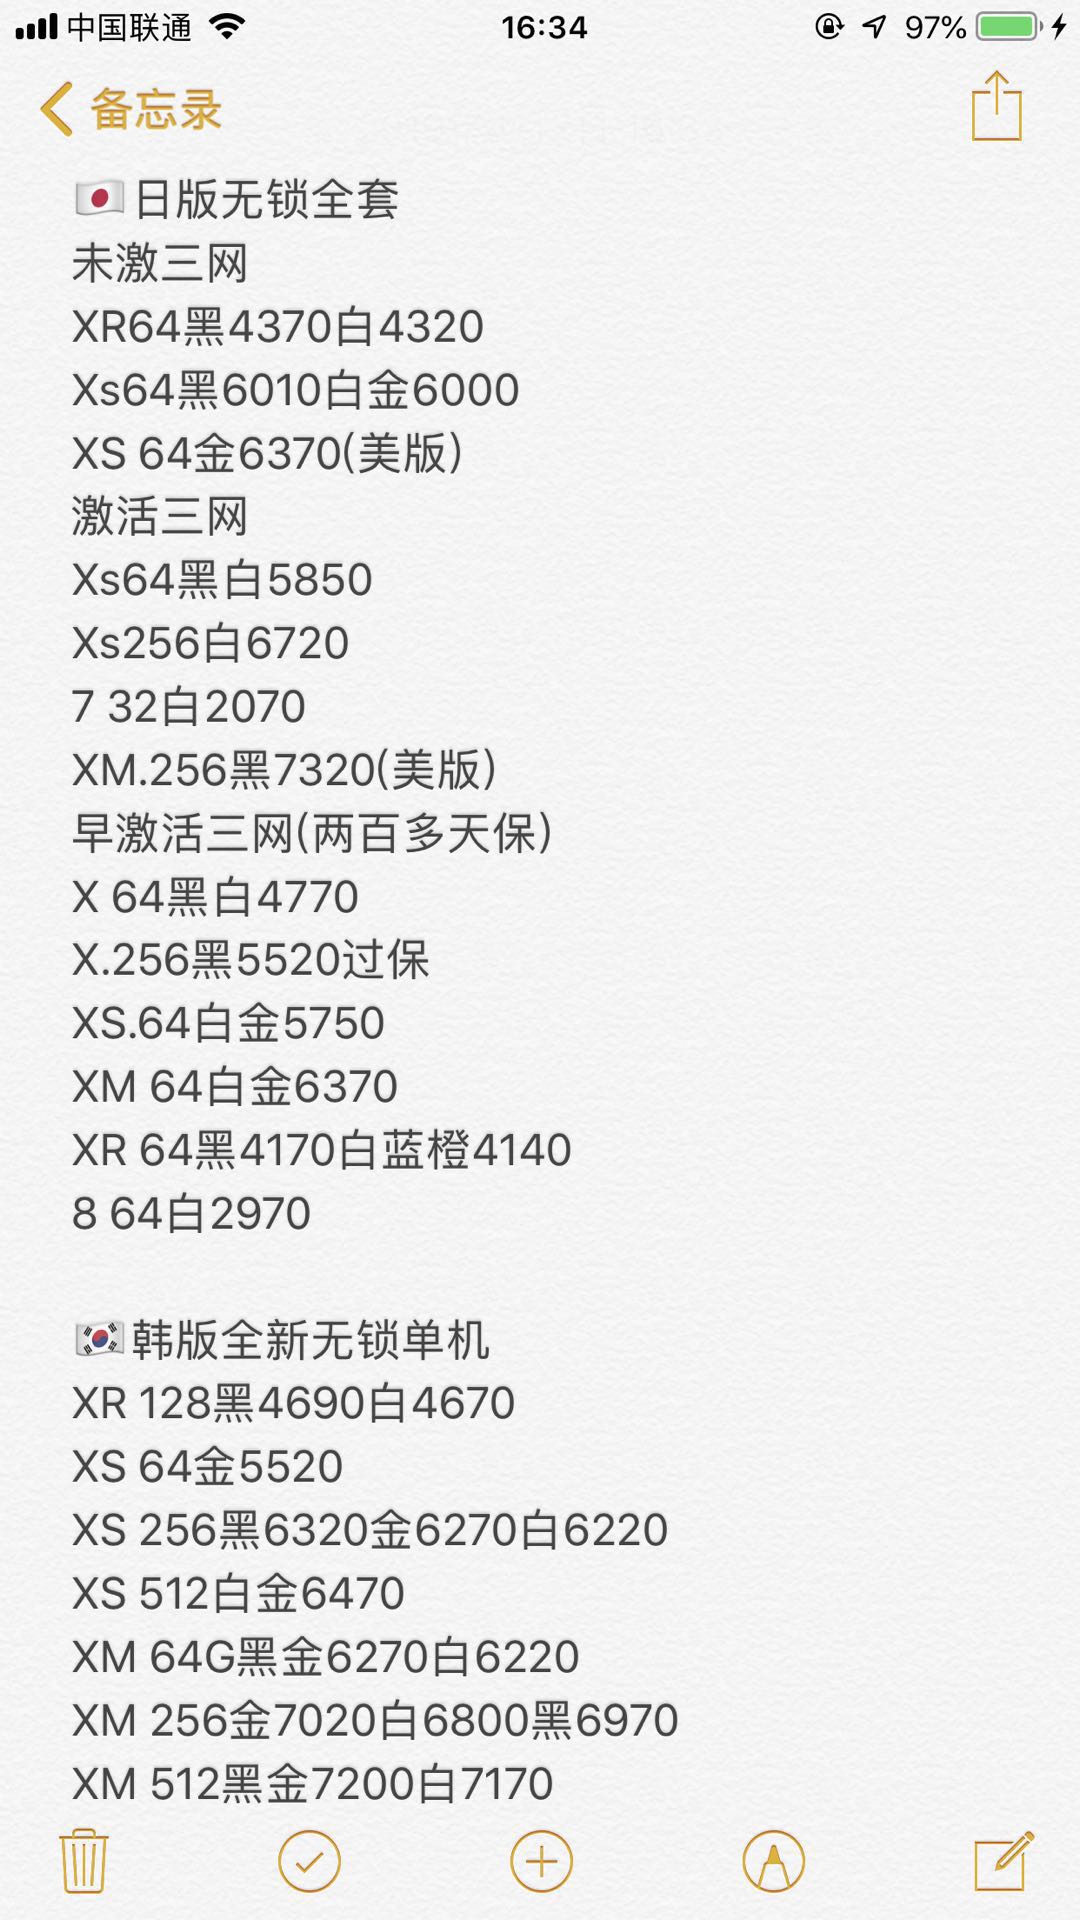 日版 美版 韩版 无锁全套苹果iPhone XS XS MAX X 8 7全新报价单.jpg